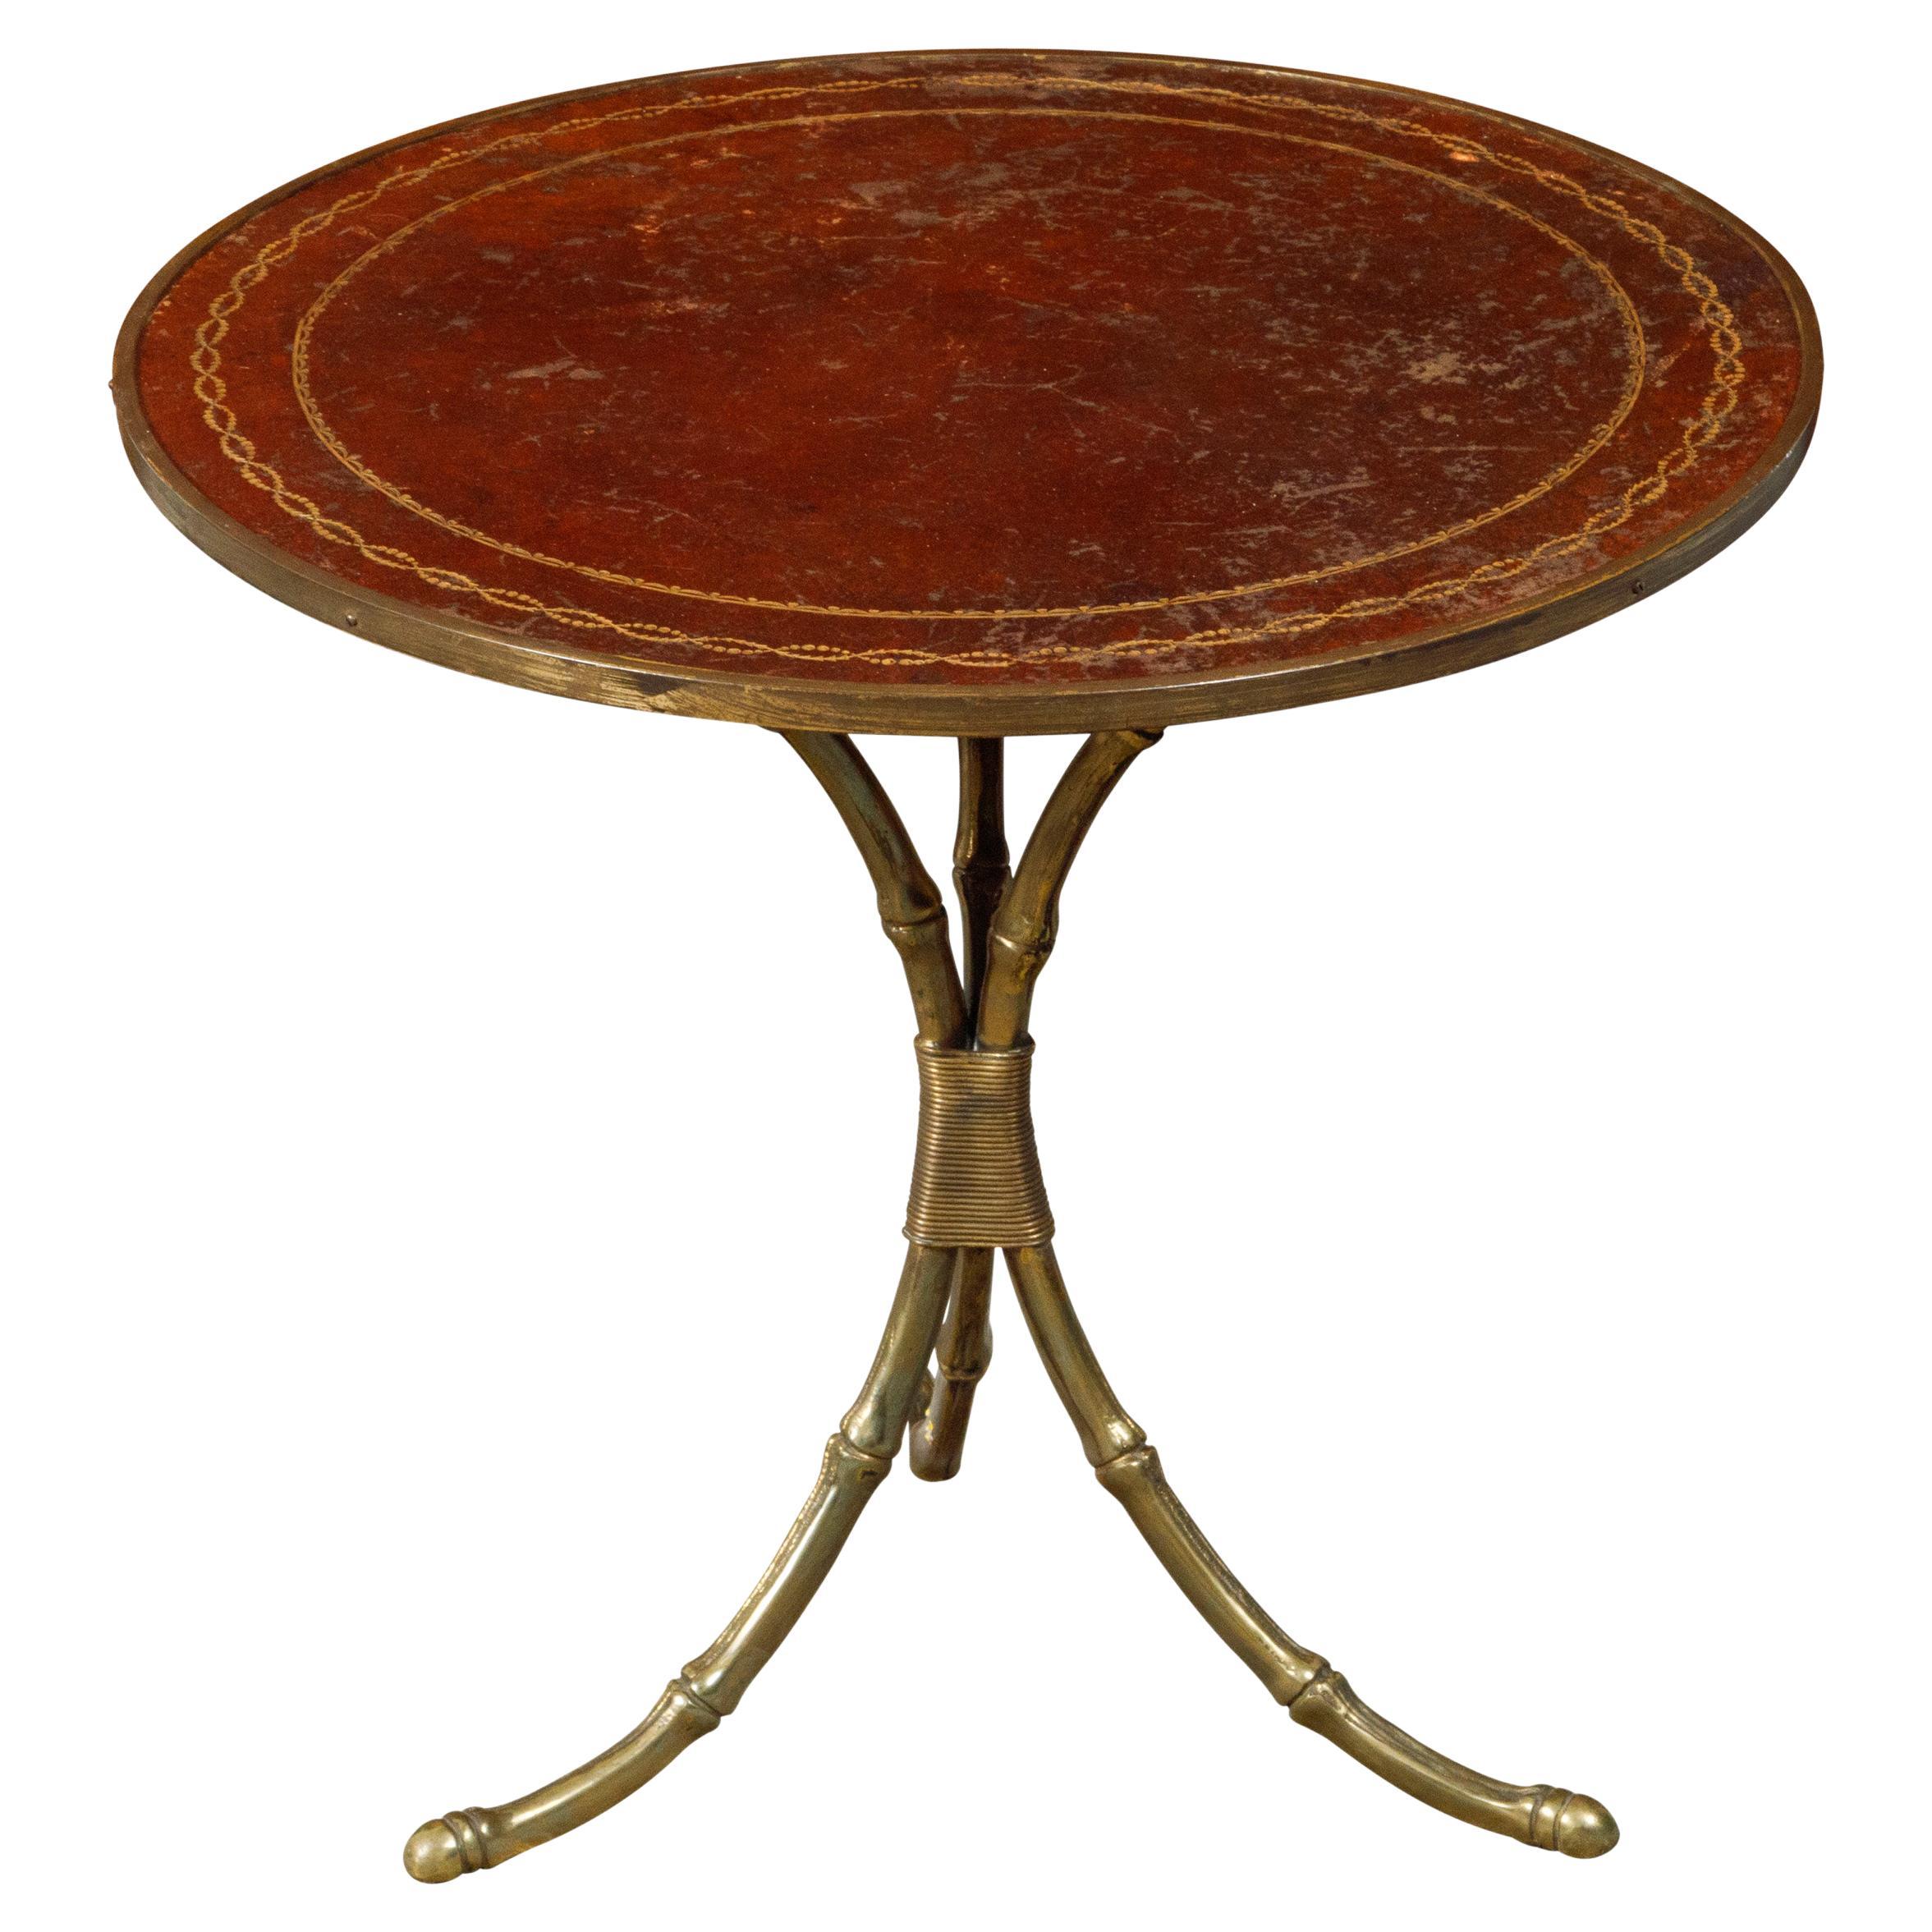 Table d'appoint Maison Jansen du milieu du siècle dernier avec plateau en cuir et base en laiton imitation bambou